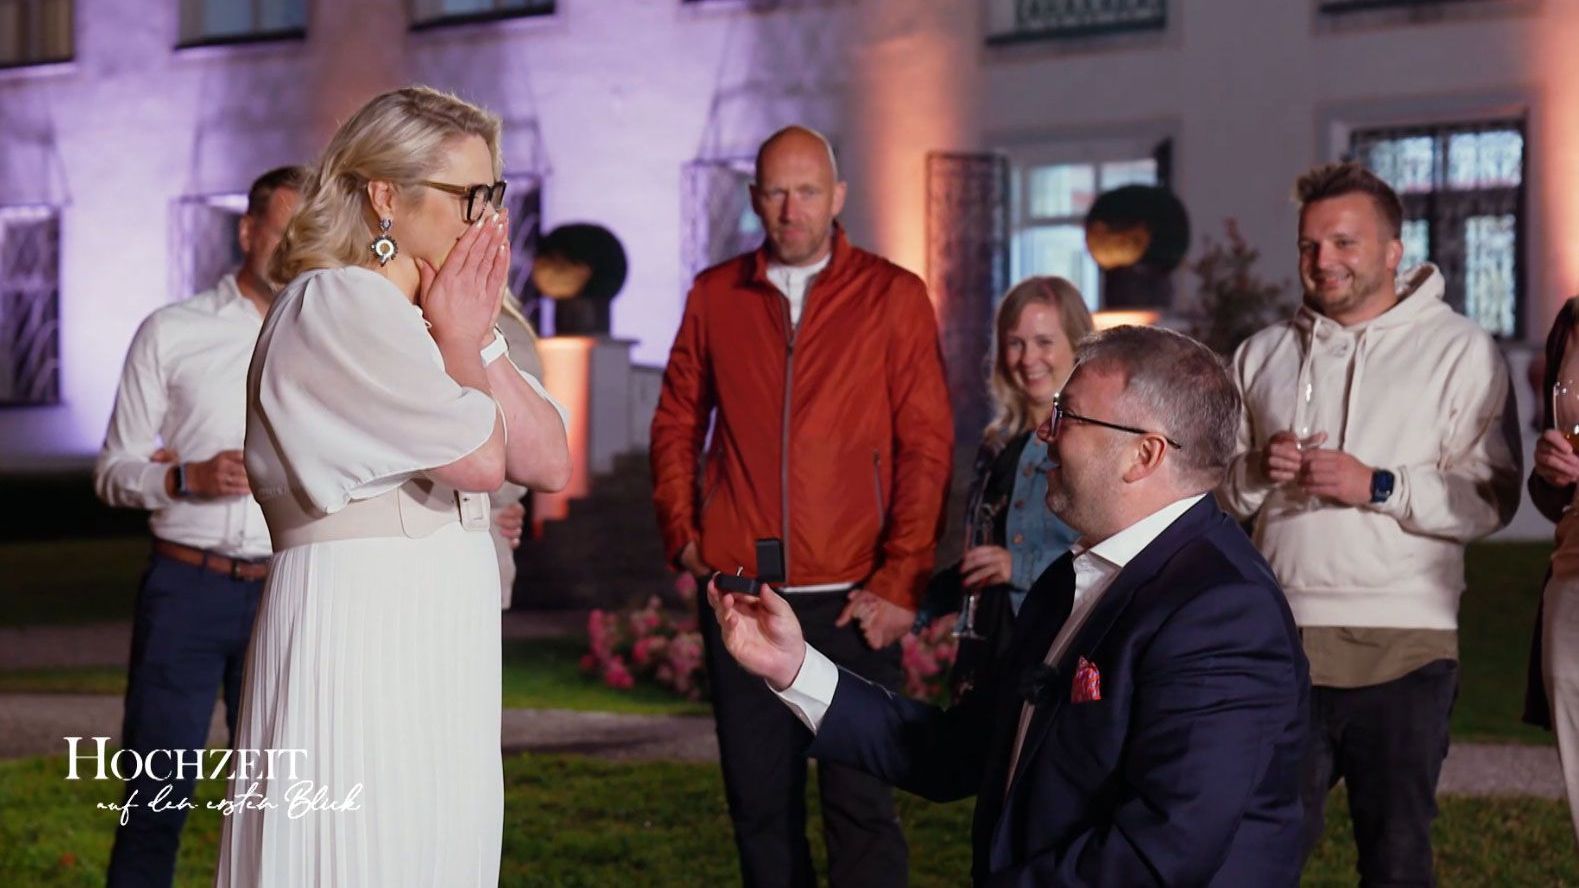 Und sie sagt Ja. Dr. Sandra Köhldorfer bekommt während des Finales von "Hochzeit auf den ersten Blick" 2022 selbst einen Antrag.